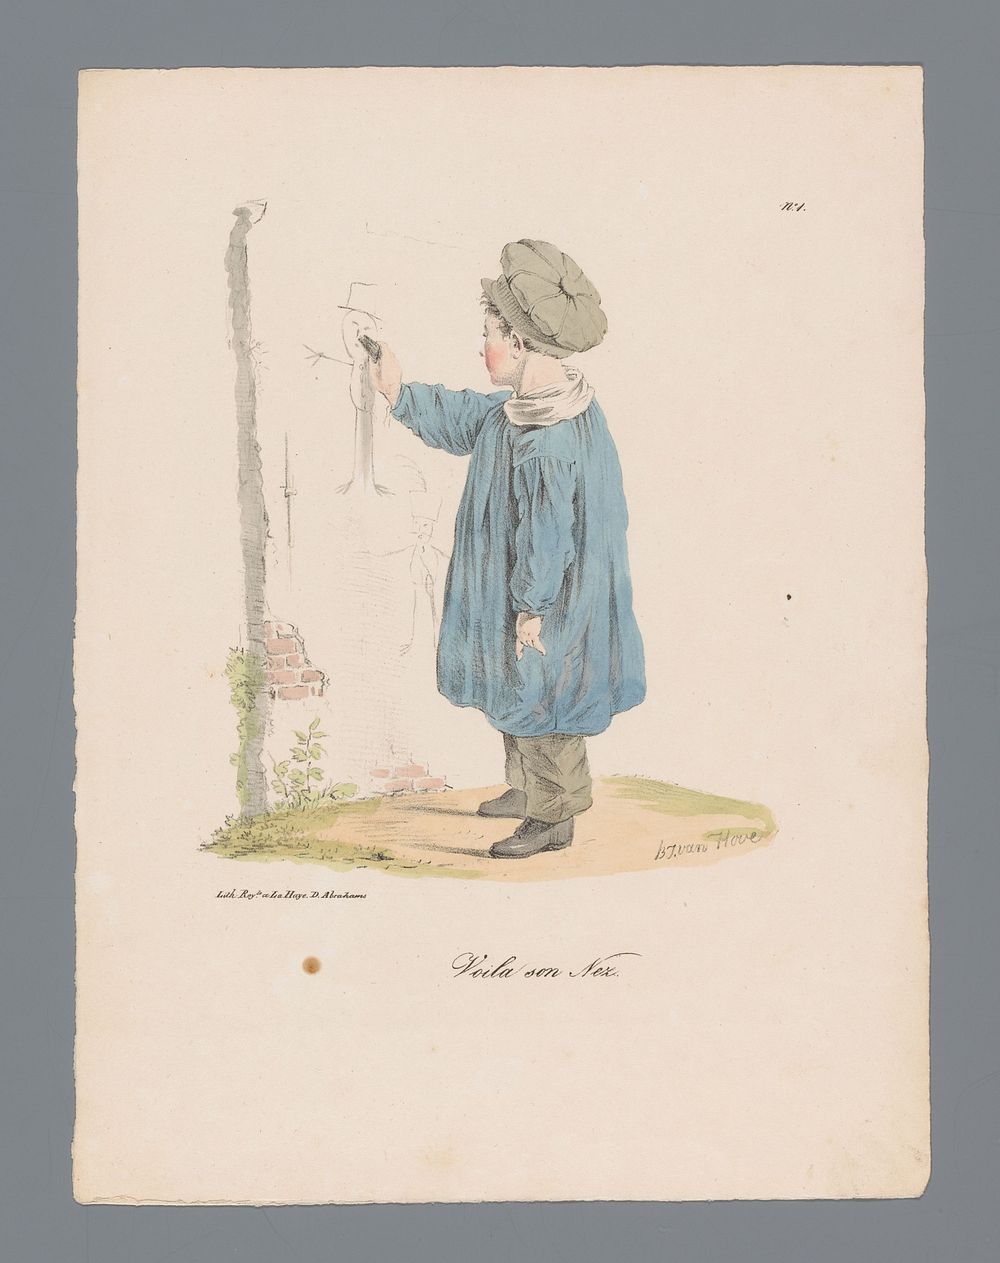 Jongen tekent op de muur (1824 - 1825) by Bartholomeus Johannes van Hove and Daniël Abrahams